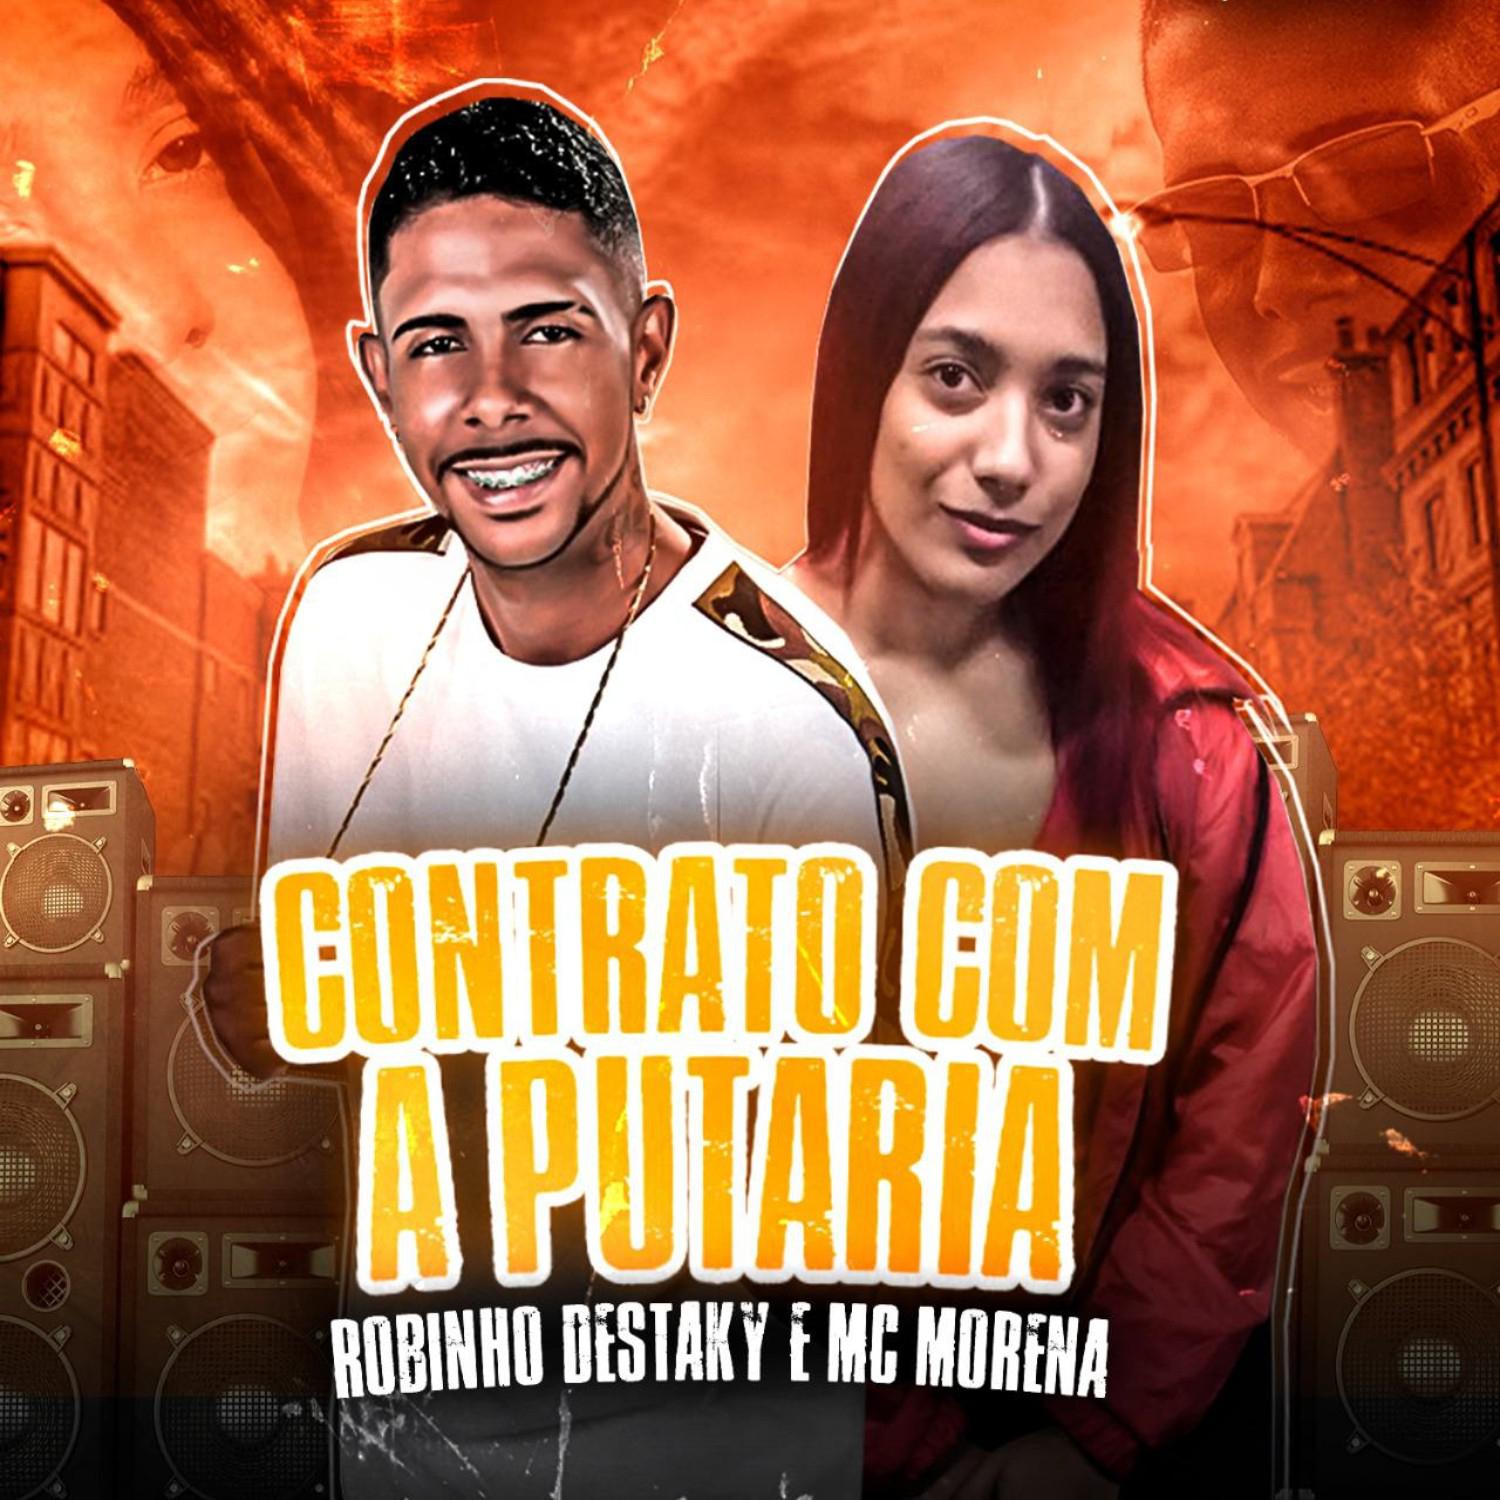 Robinho Destaky - Contrato Com a Putaria (feat. Mc Morena) (Remix)